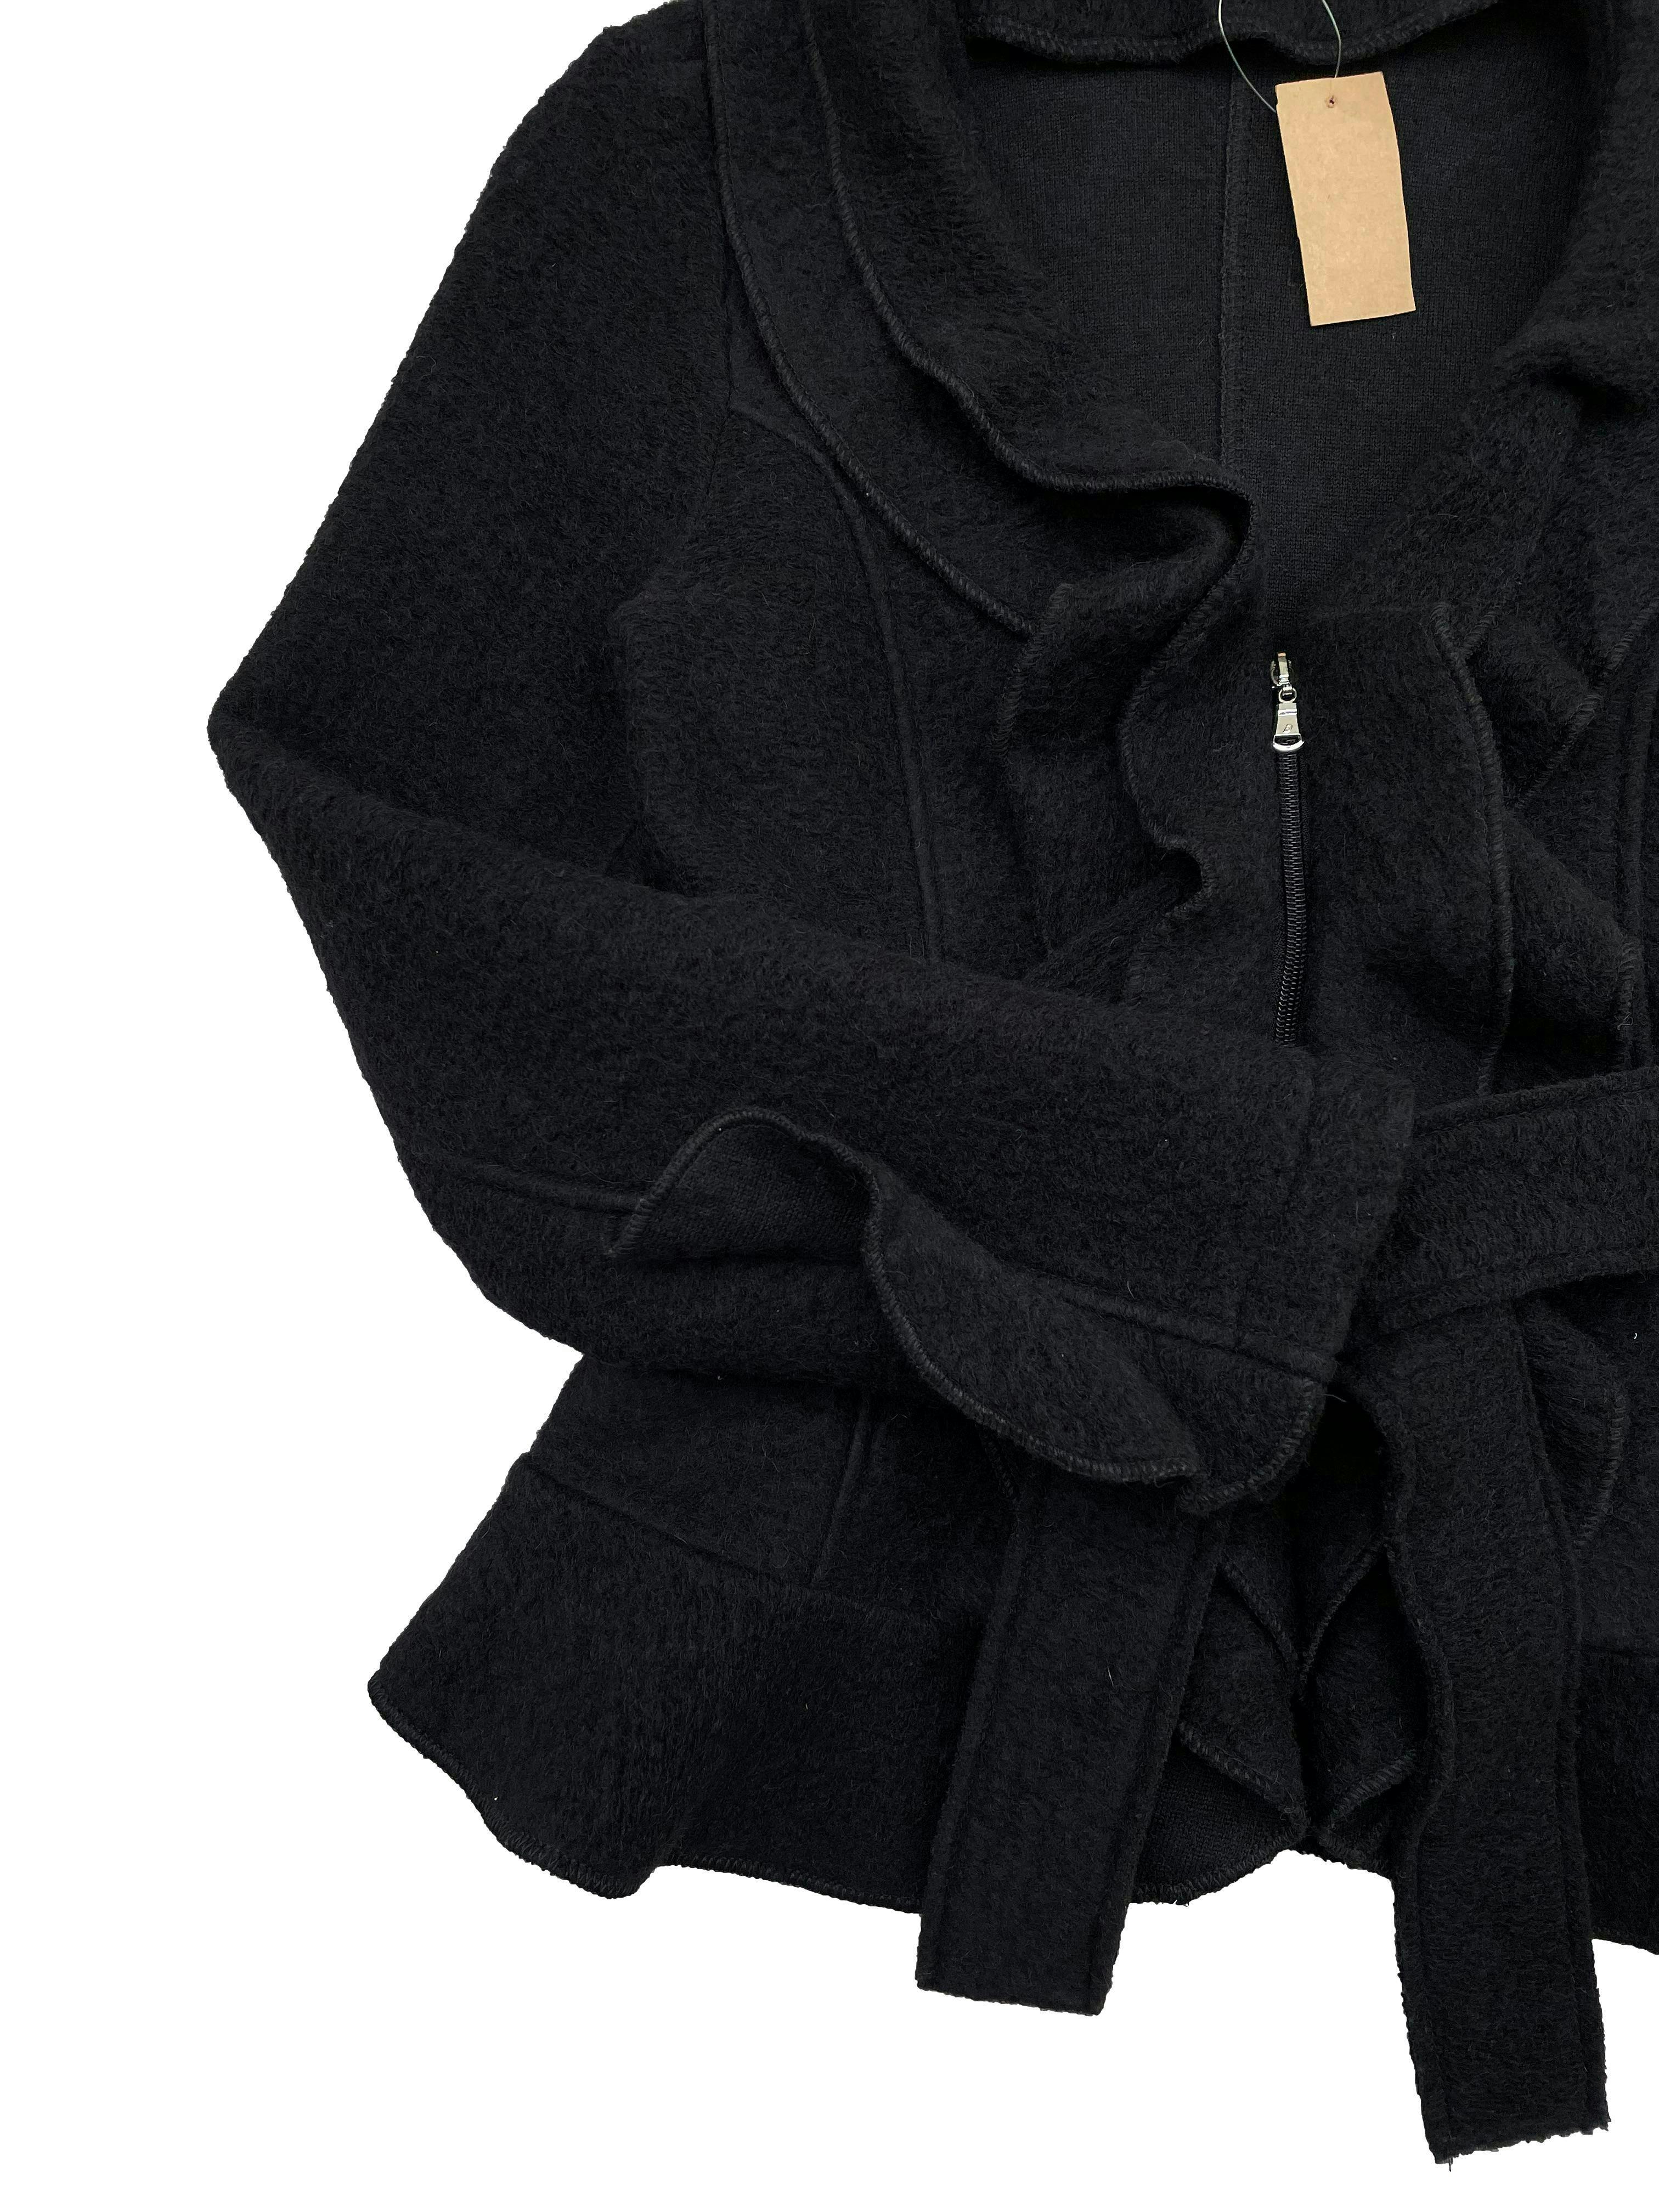 Casaca Tatienne negra 80% lana con volantes, cierre delantero y cinto para amarrar. Busto 98cm, Largo 60cm.